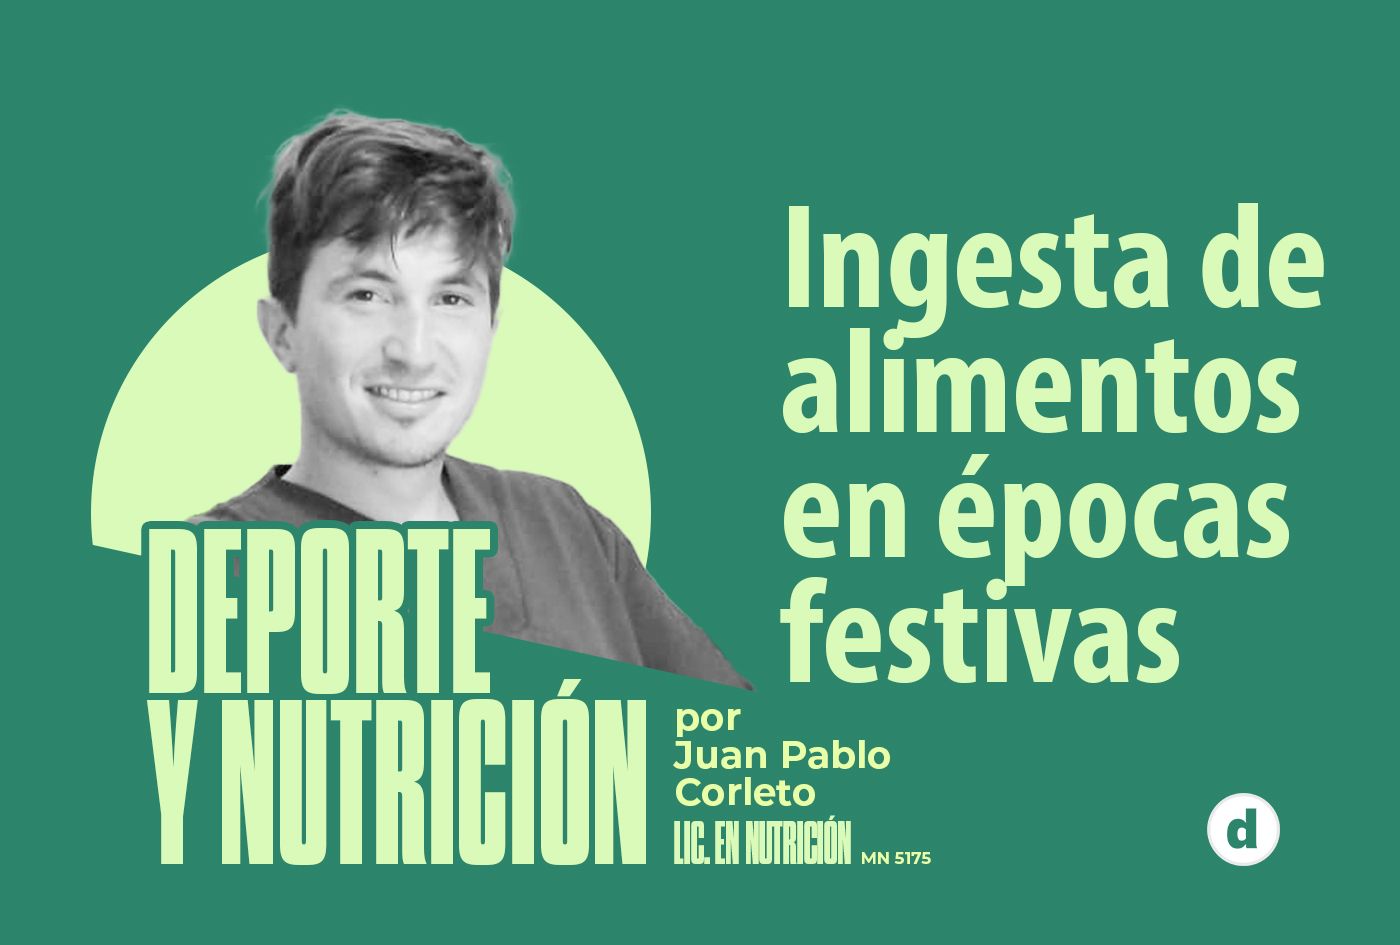 La columna del nutricionista Juan Pablo Corleto: “Ingesta de alimentos en épocas festivas”